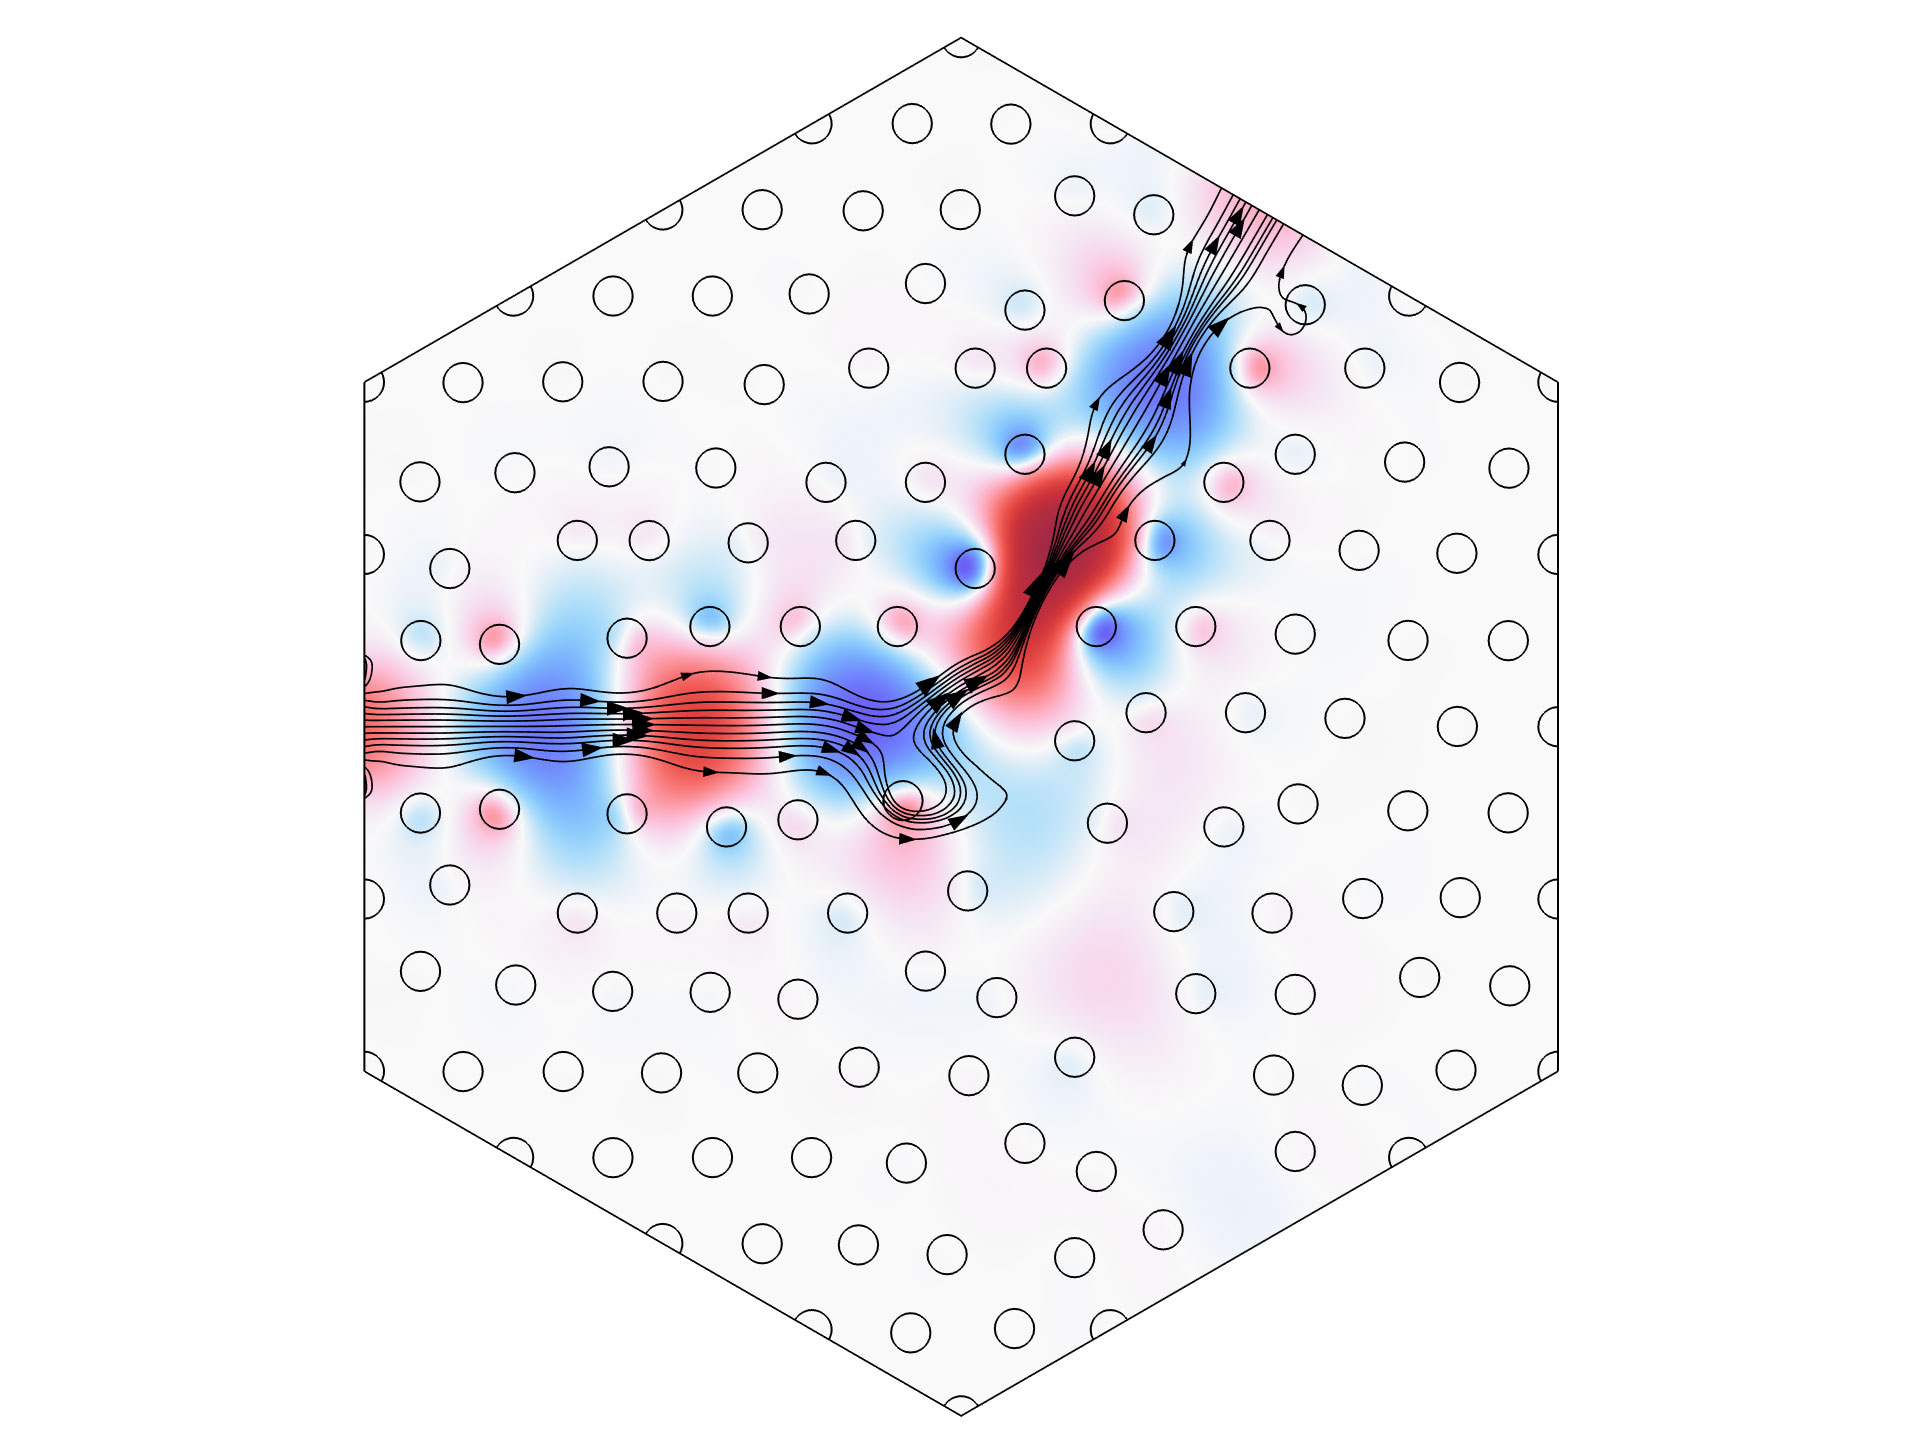 光子的内部结构模型图图片